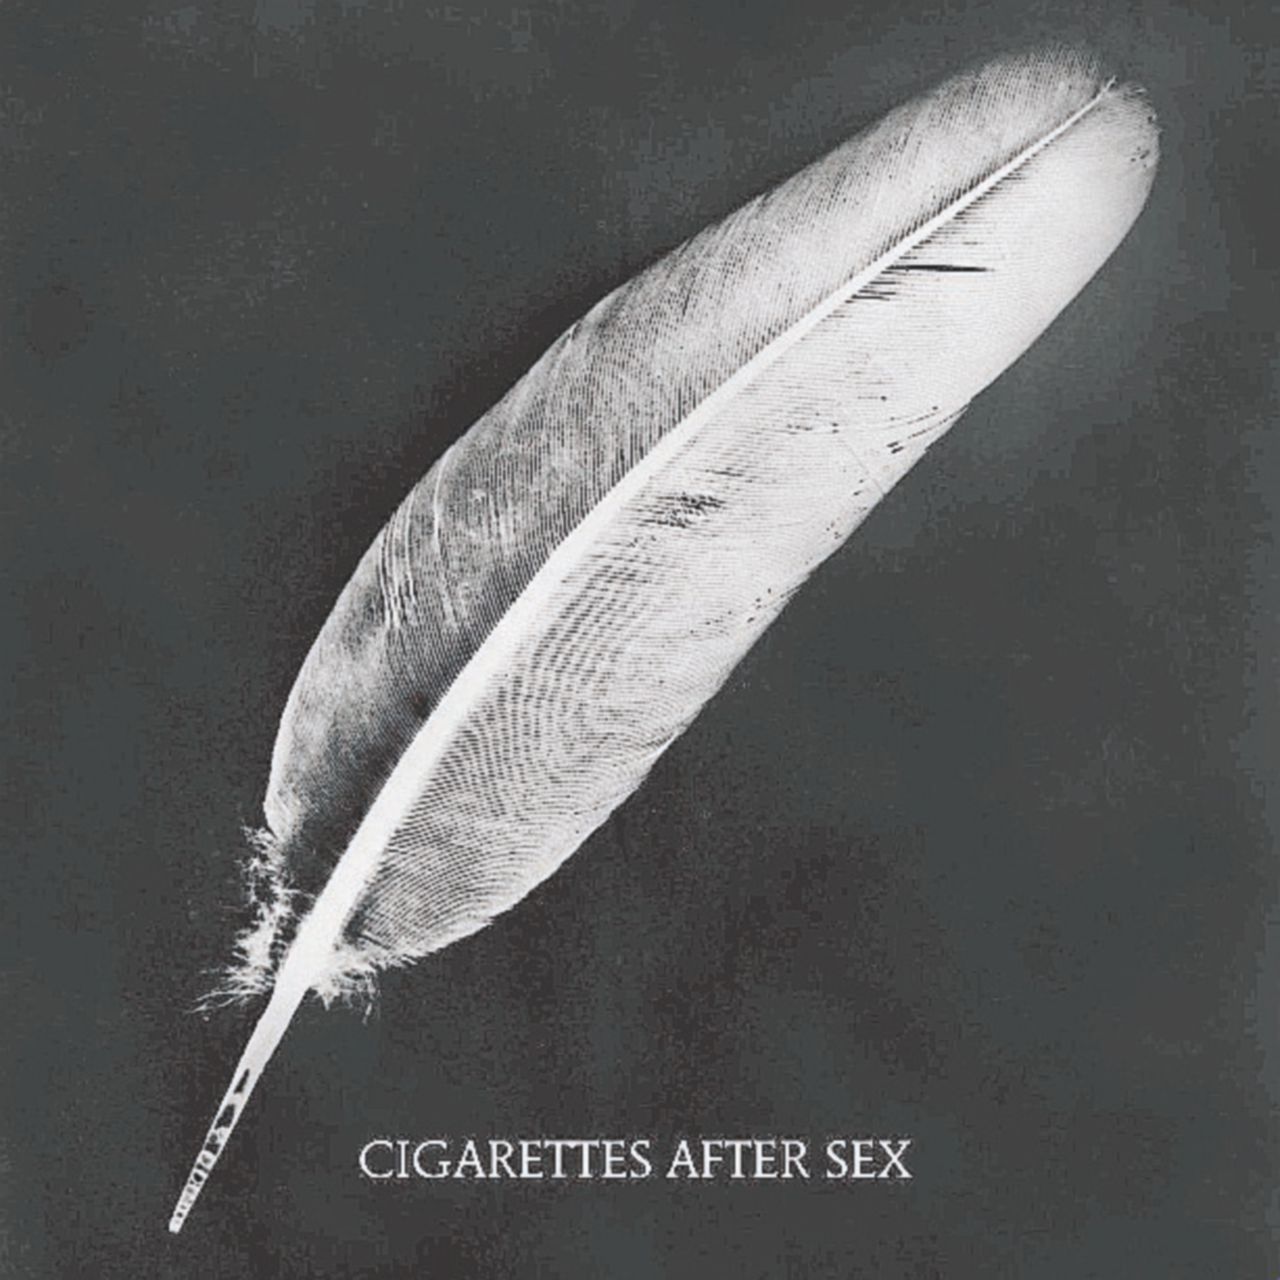 Copertina di Cigarette after sex, manuale d’uso per un buon relax